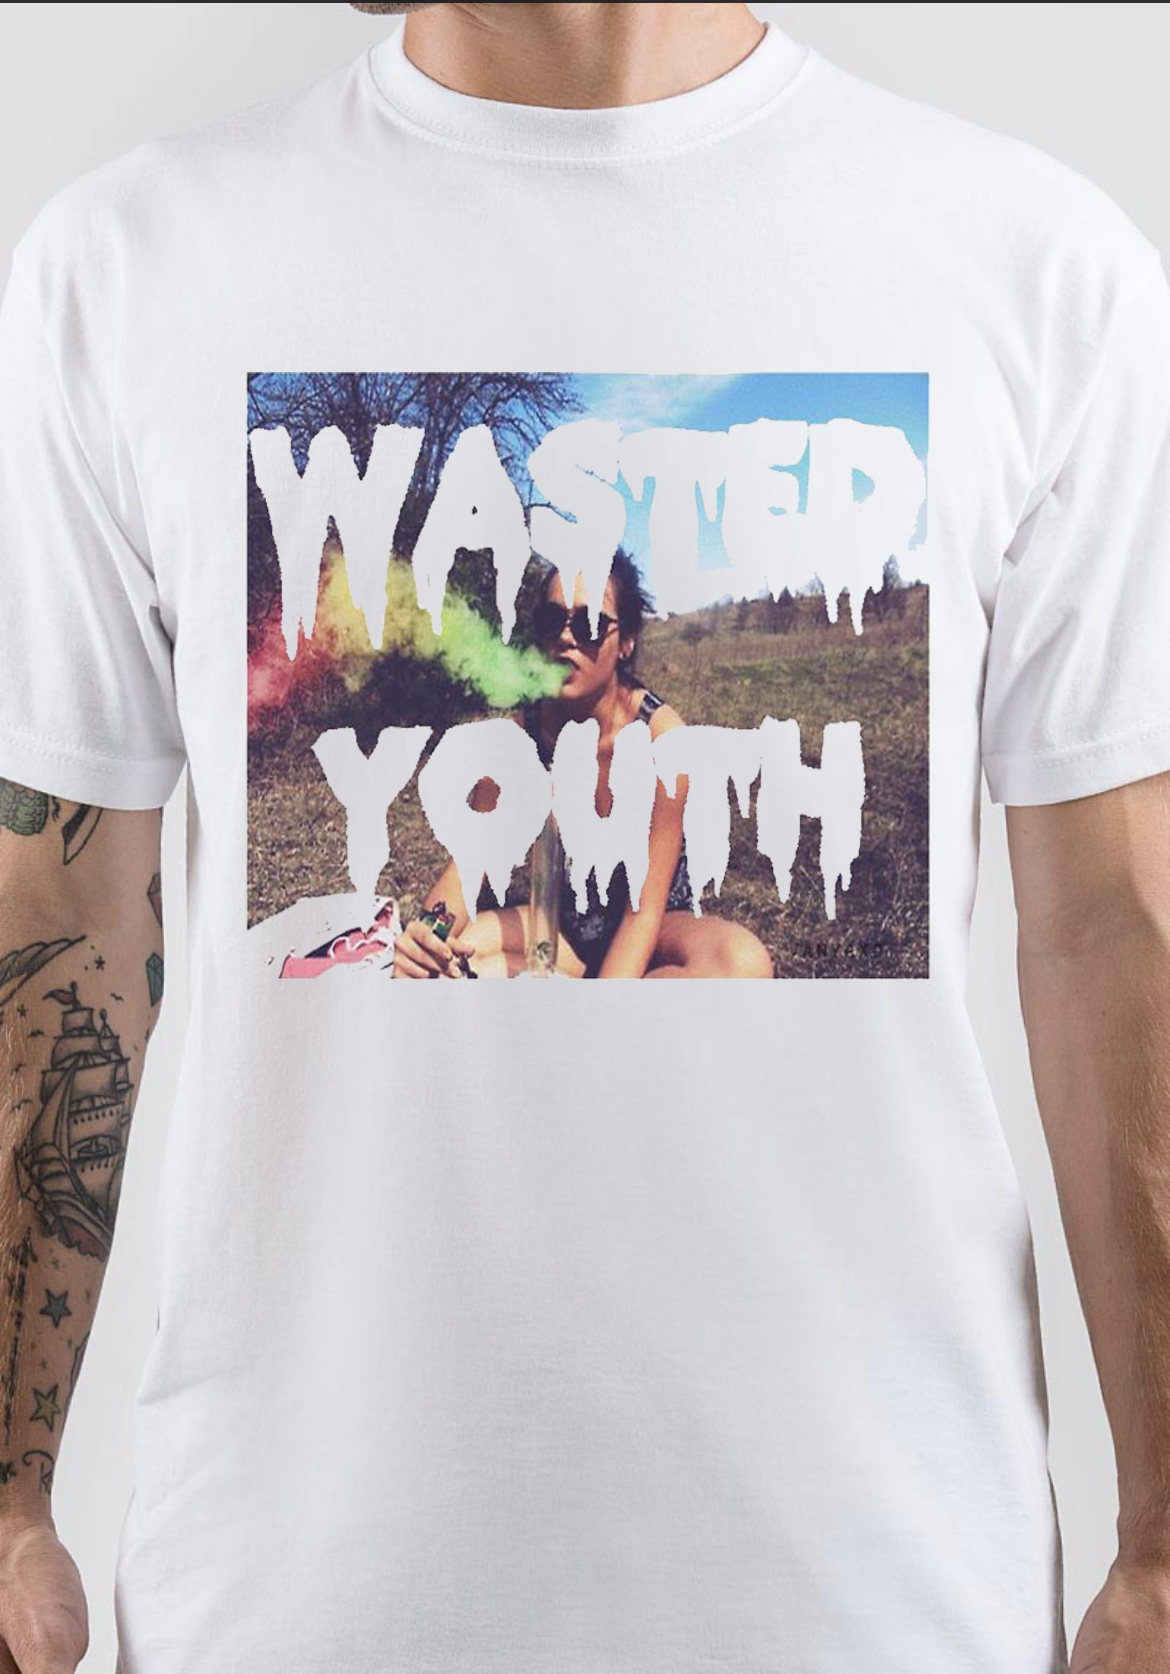 Wasted Youth T-Shirt | Swag Shirts